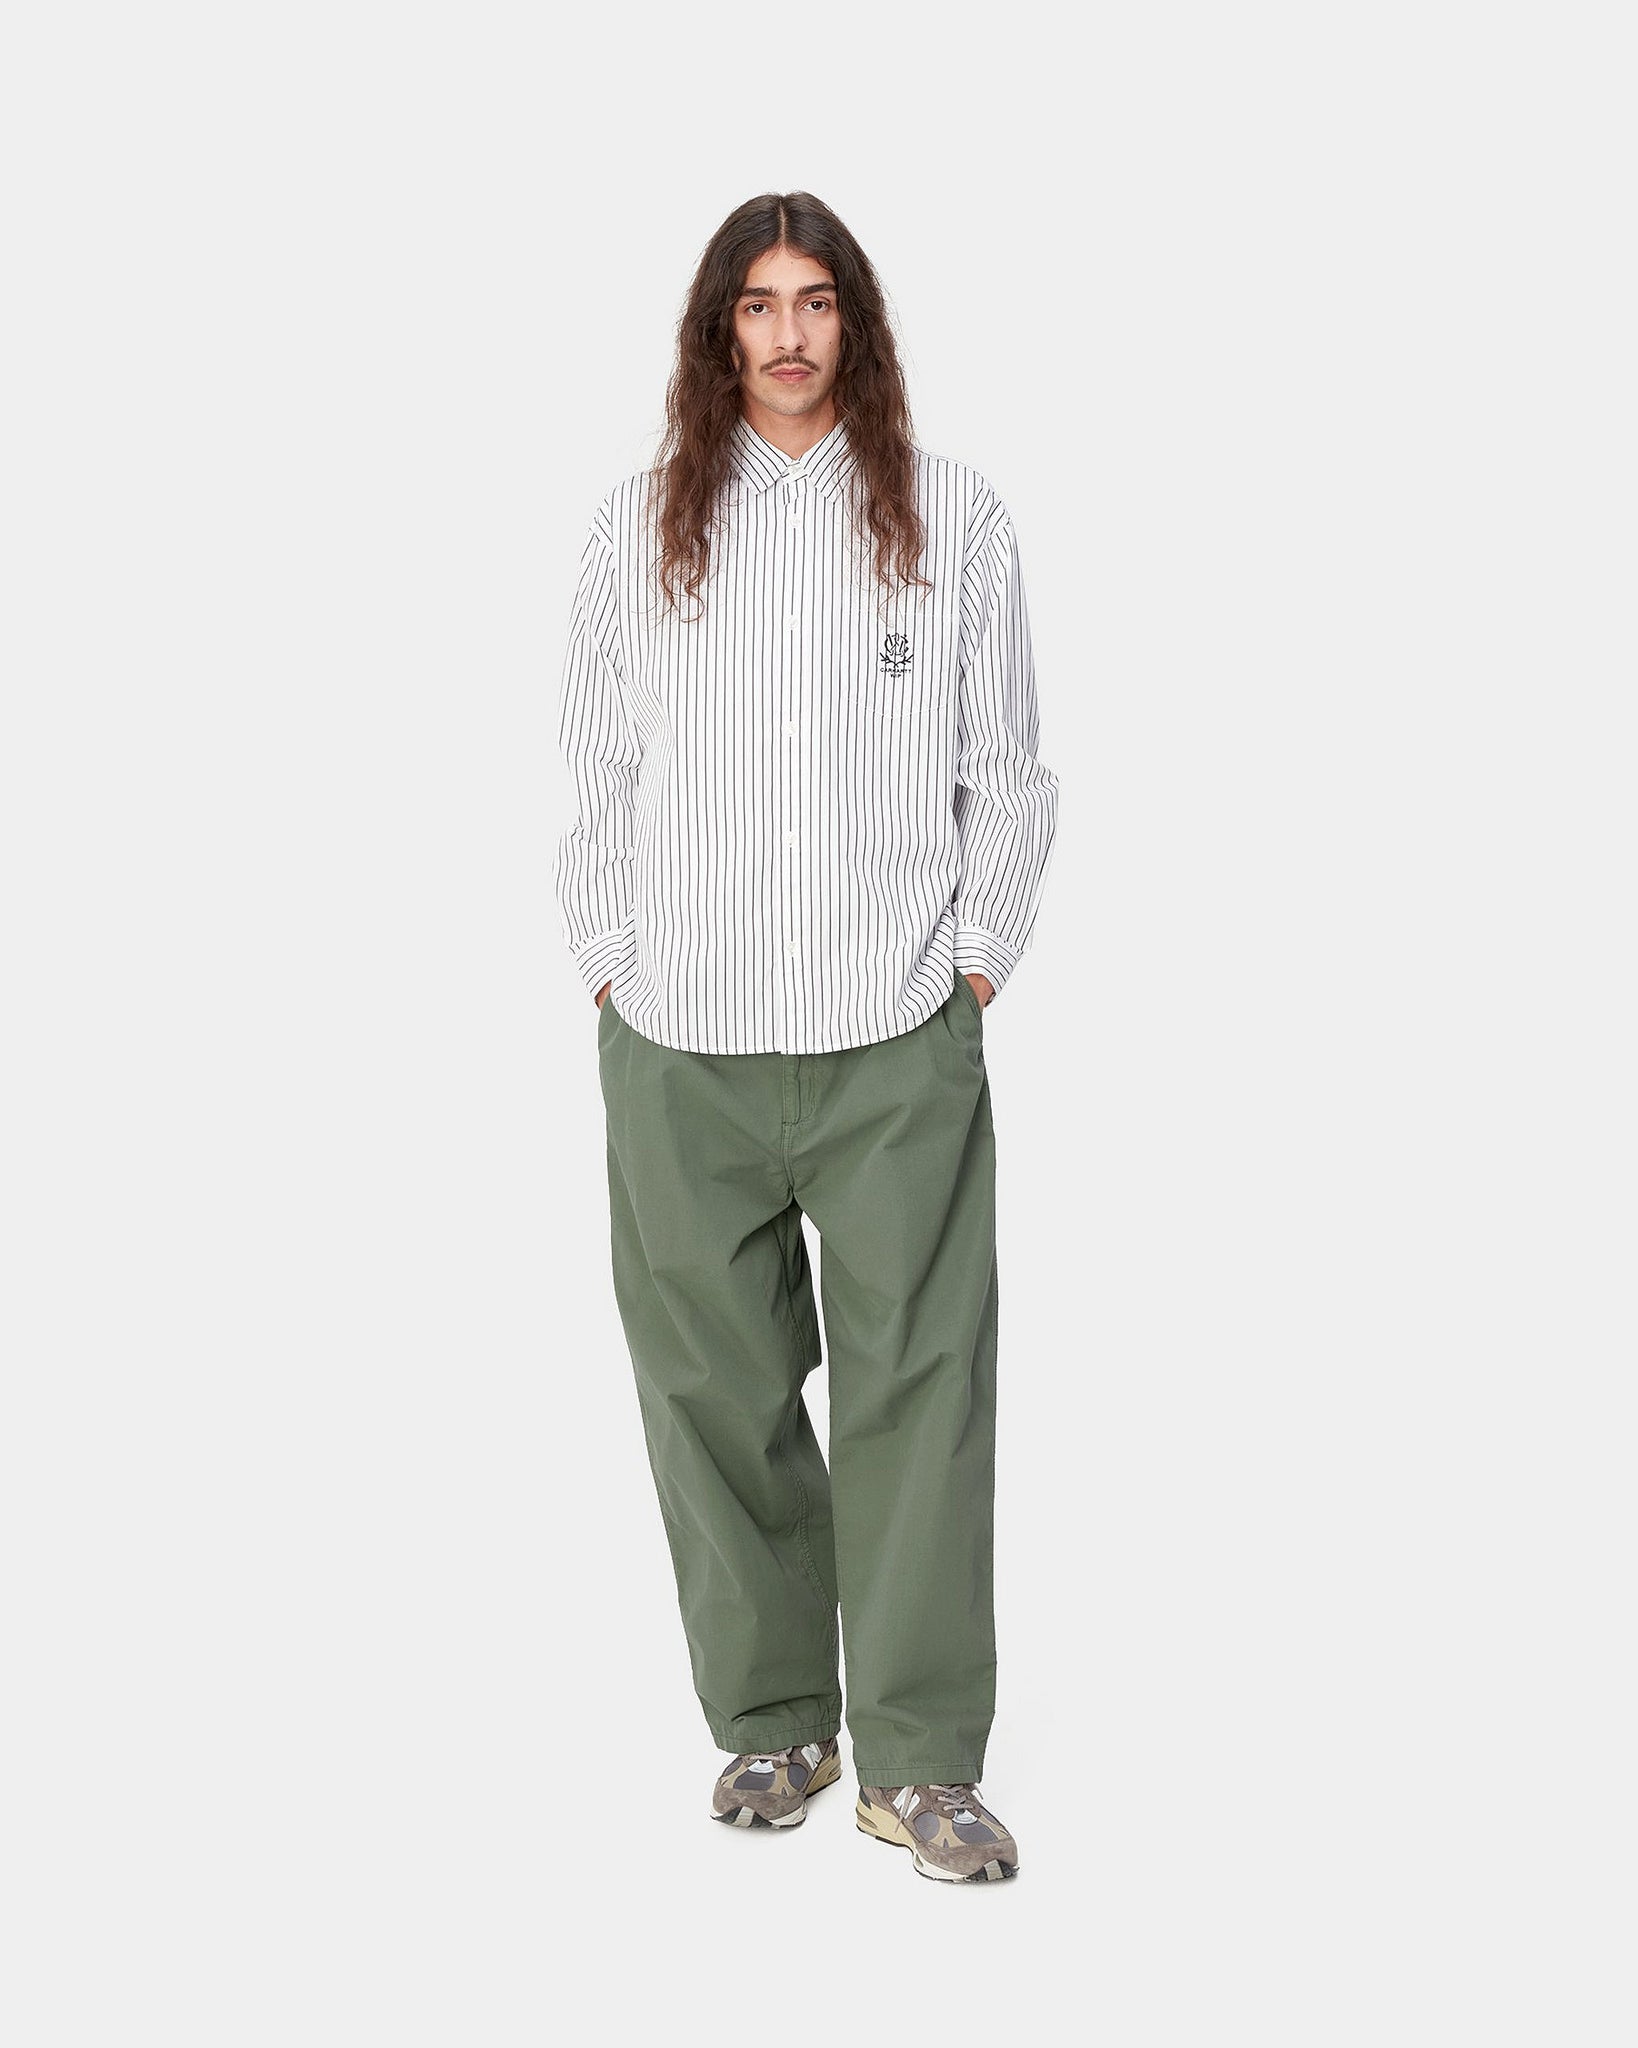 Pantalon Colston - Dollar Green (teint en pièce)